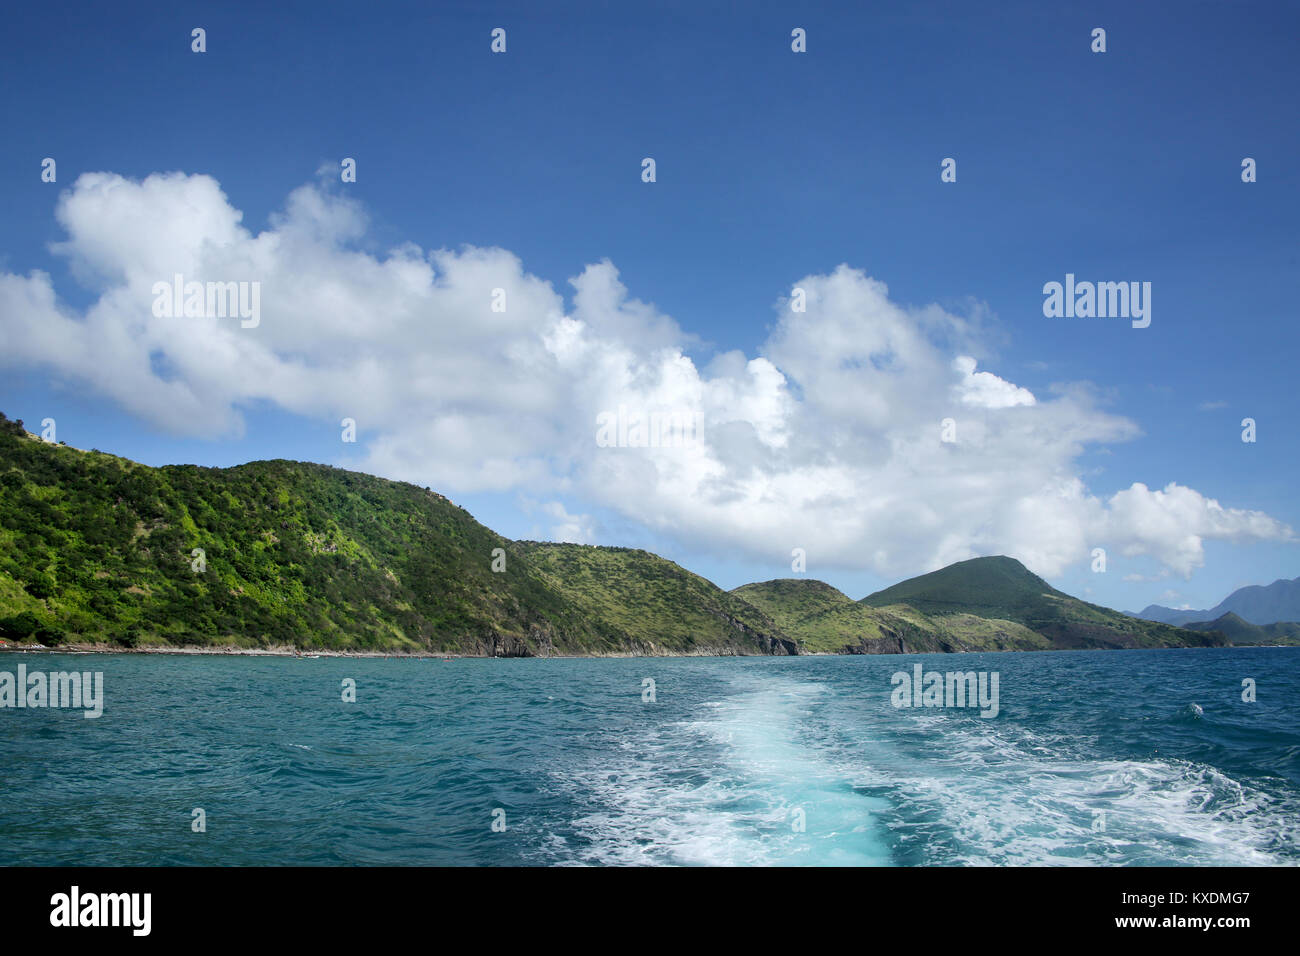 Vue sur la côte de la mer avec le service du bateau, St Kitts, Caraïbes. Banque D'Images